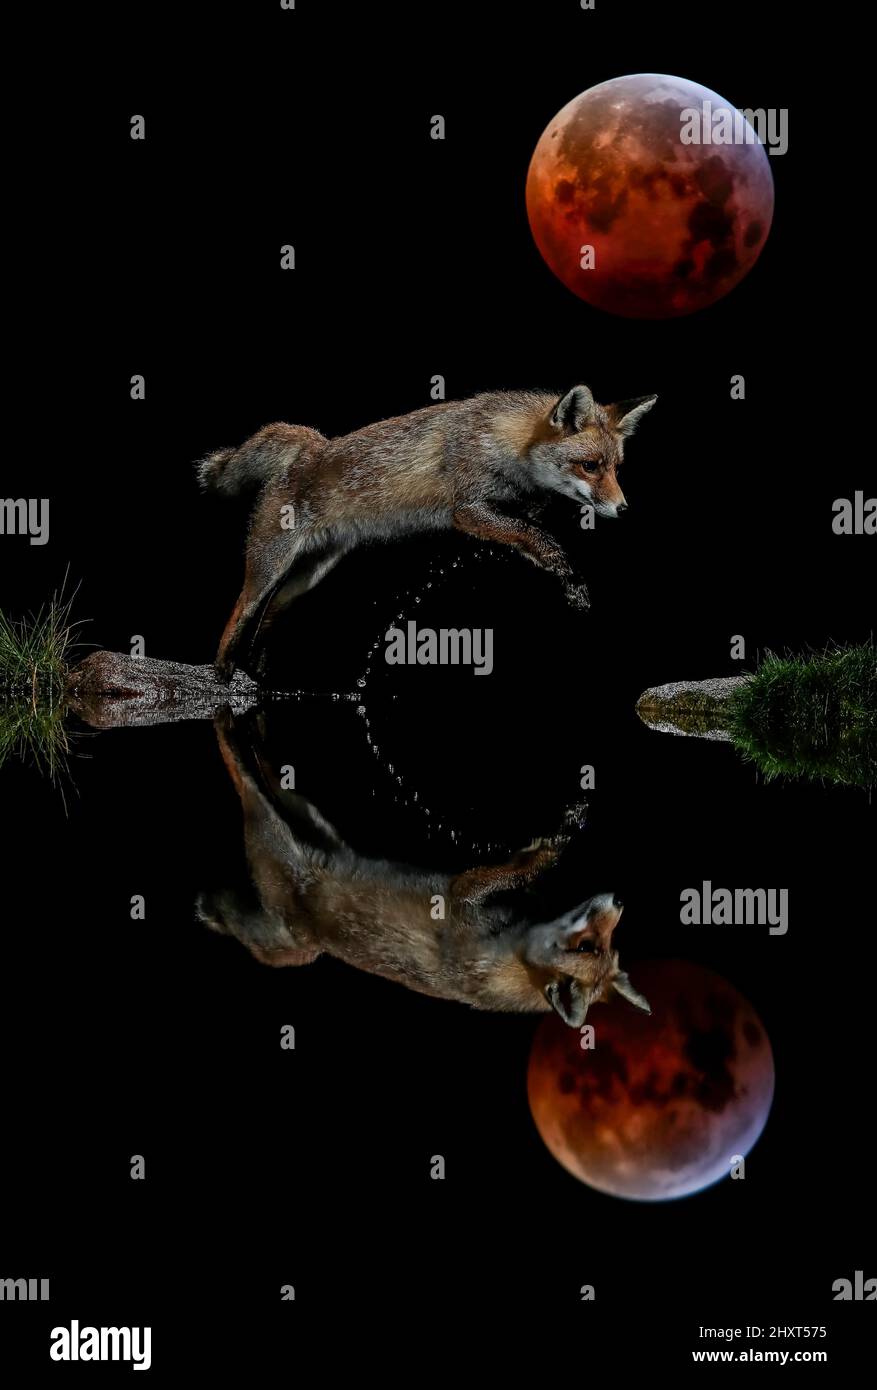 Retrato nocturno del zorro rojo (Vulpes vulpes) saltando por la noche, con silueta reflejada y una gran luna roja en el cielo Foto de stock